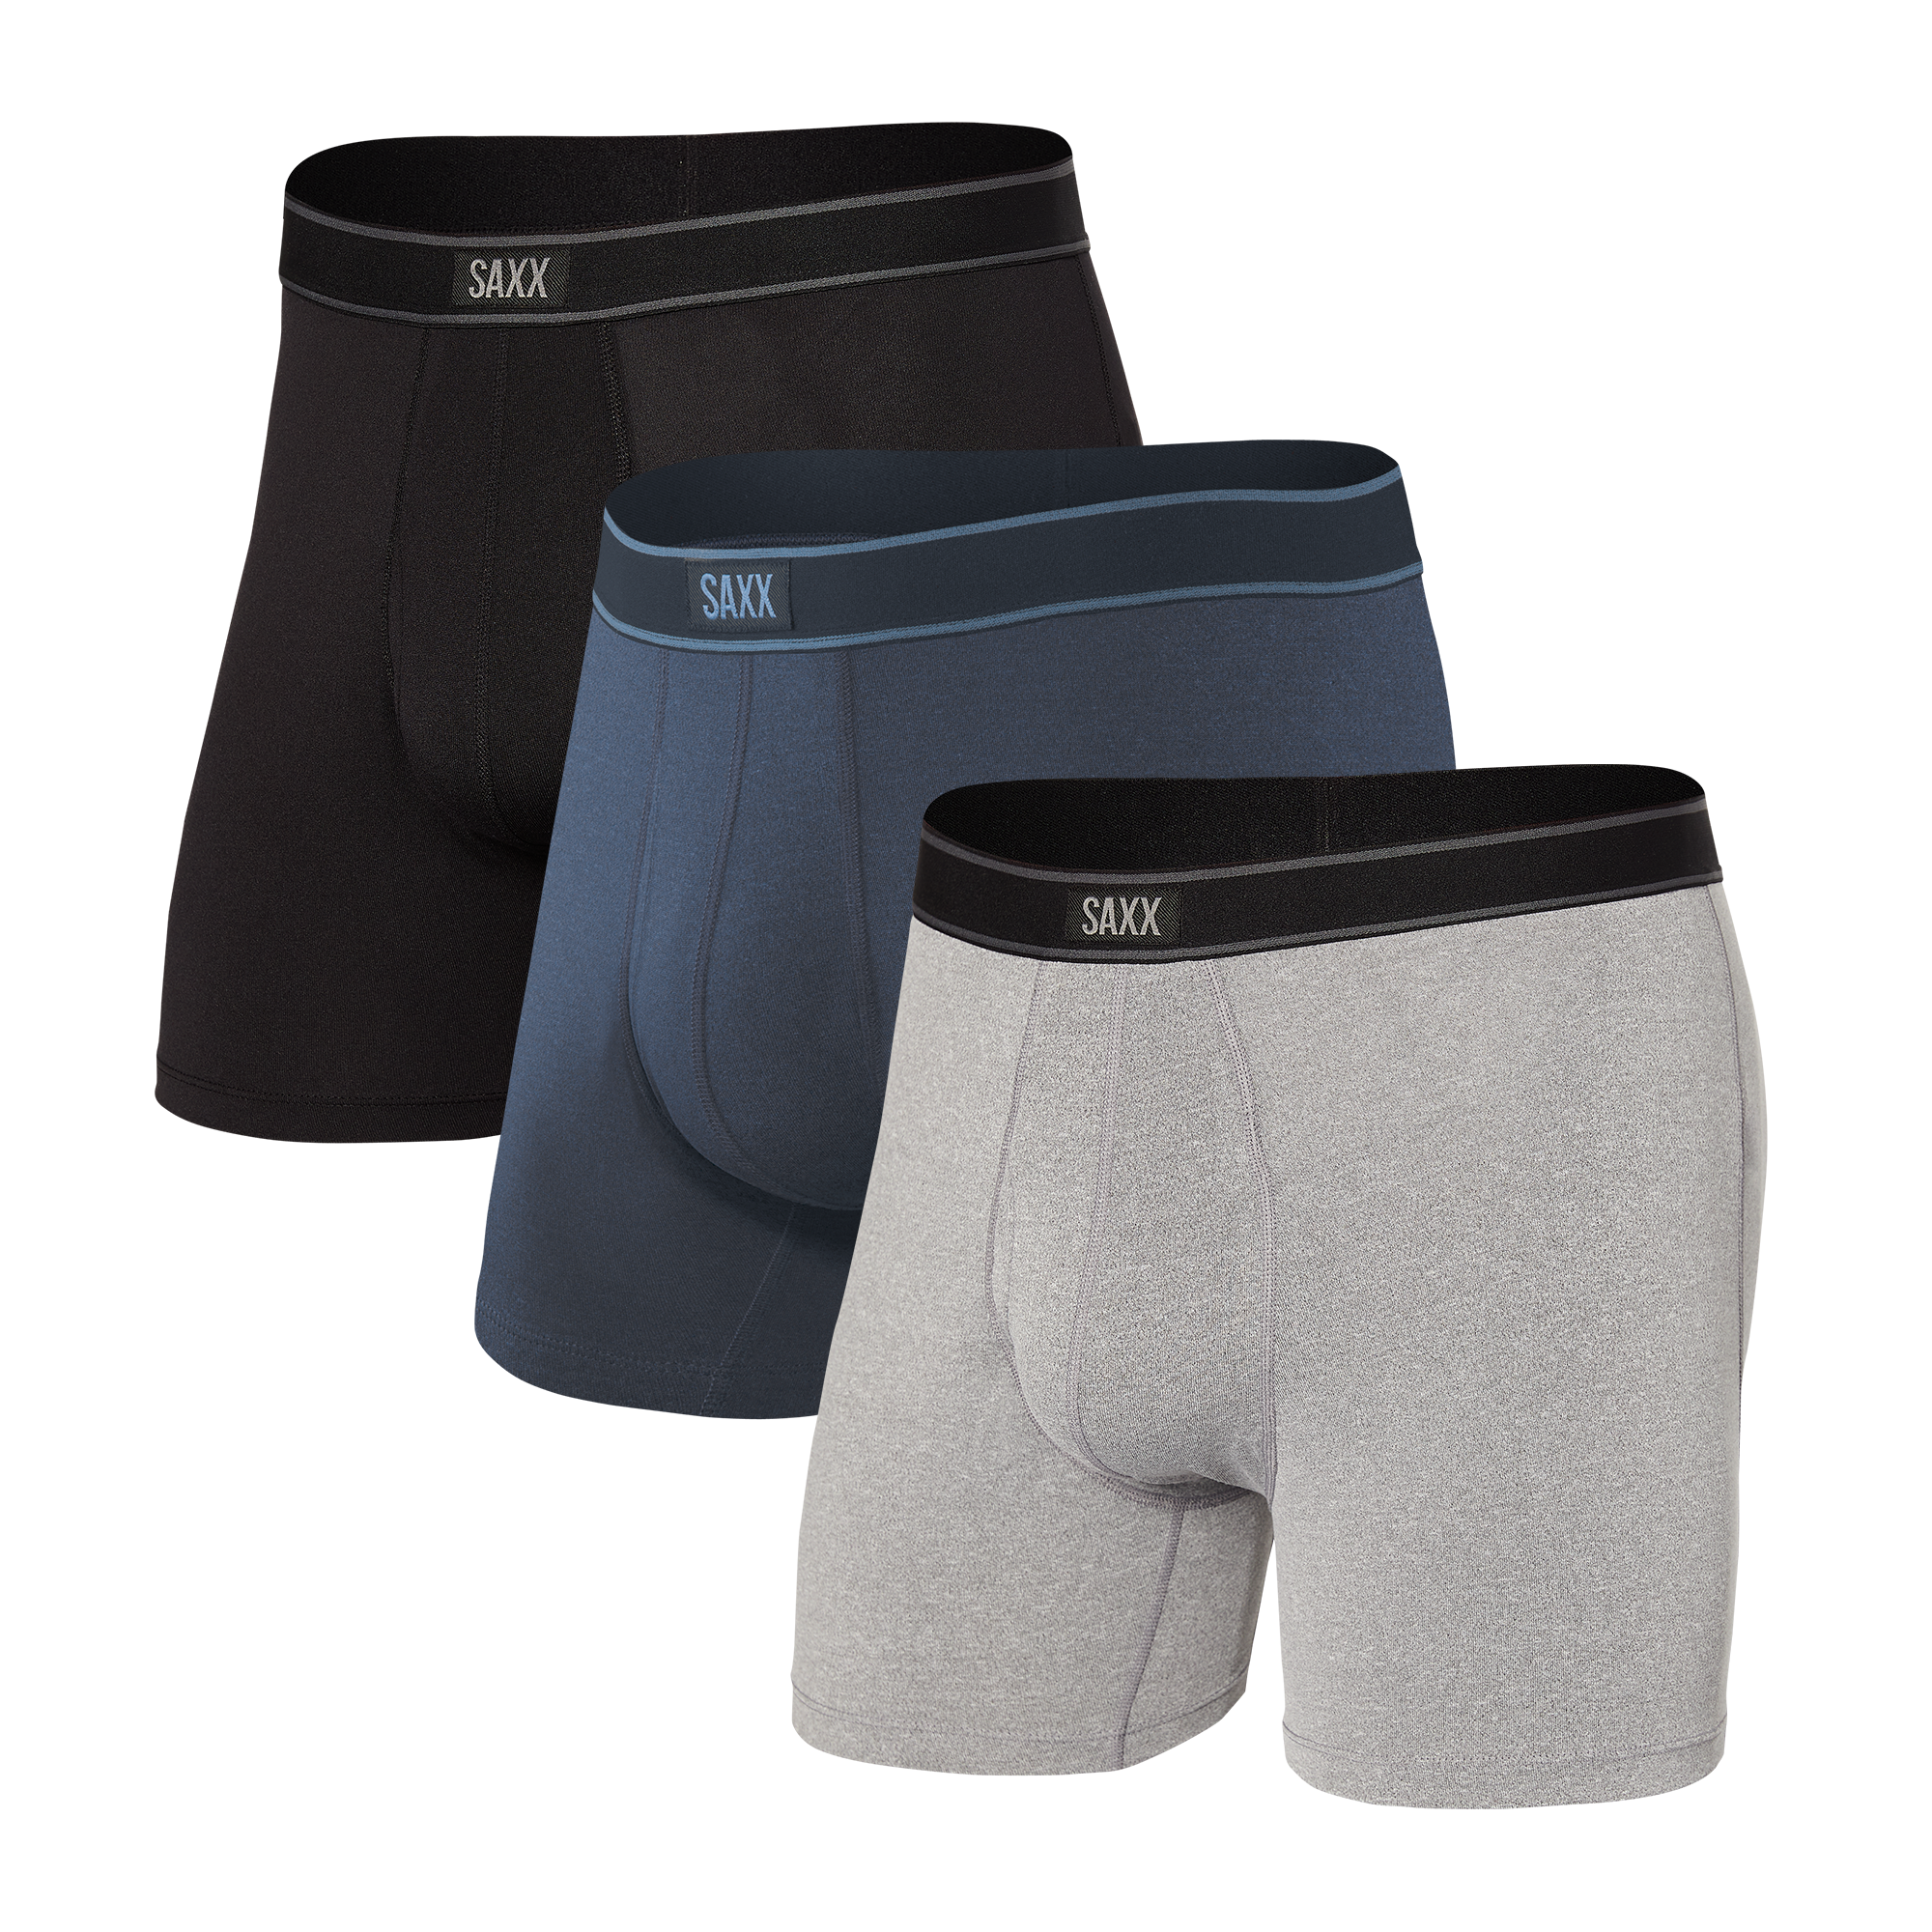 SAXX Underwear® Life Changing Mens Underwear picture